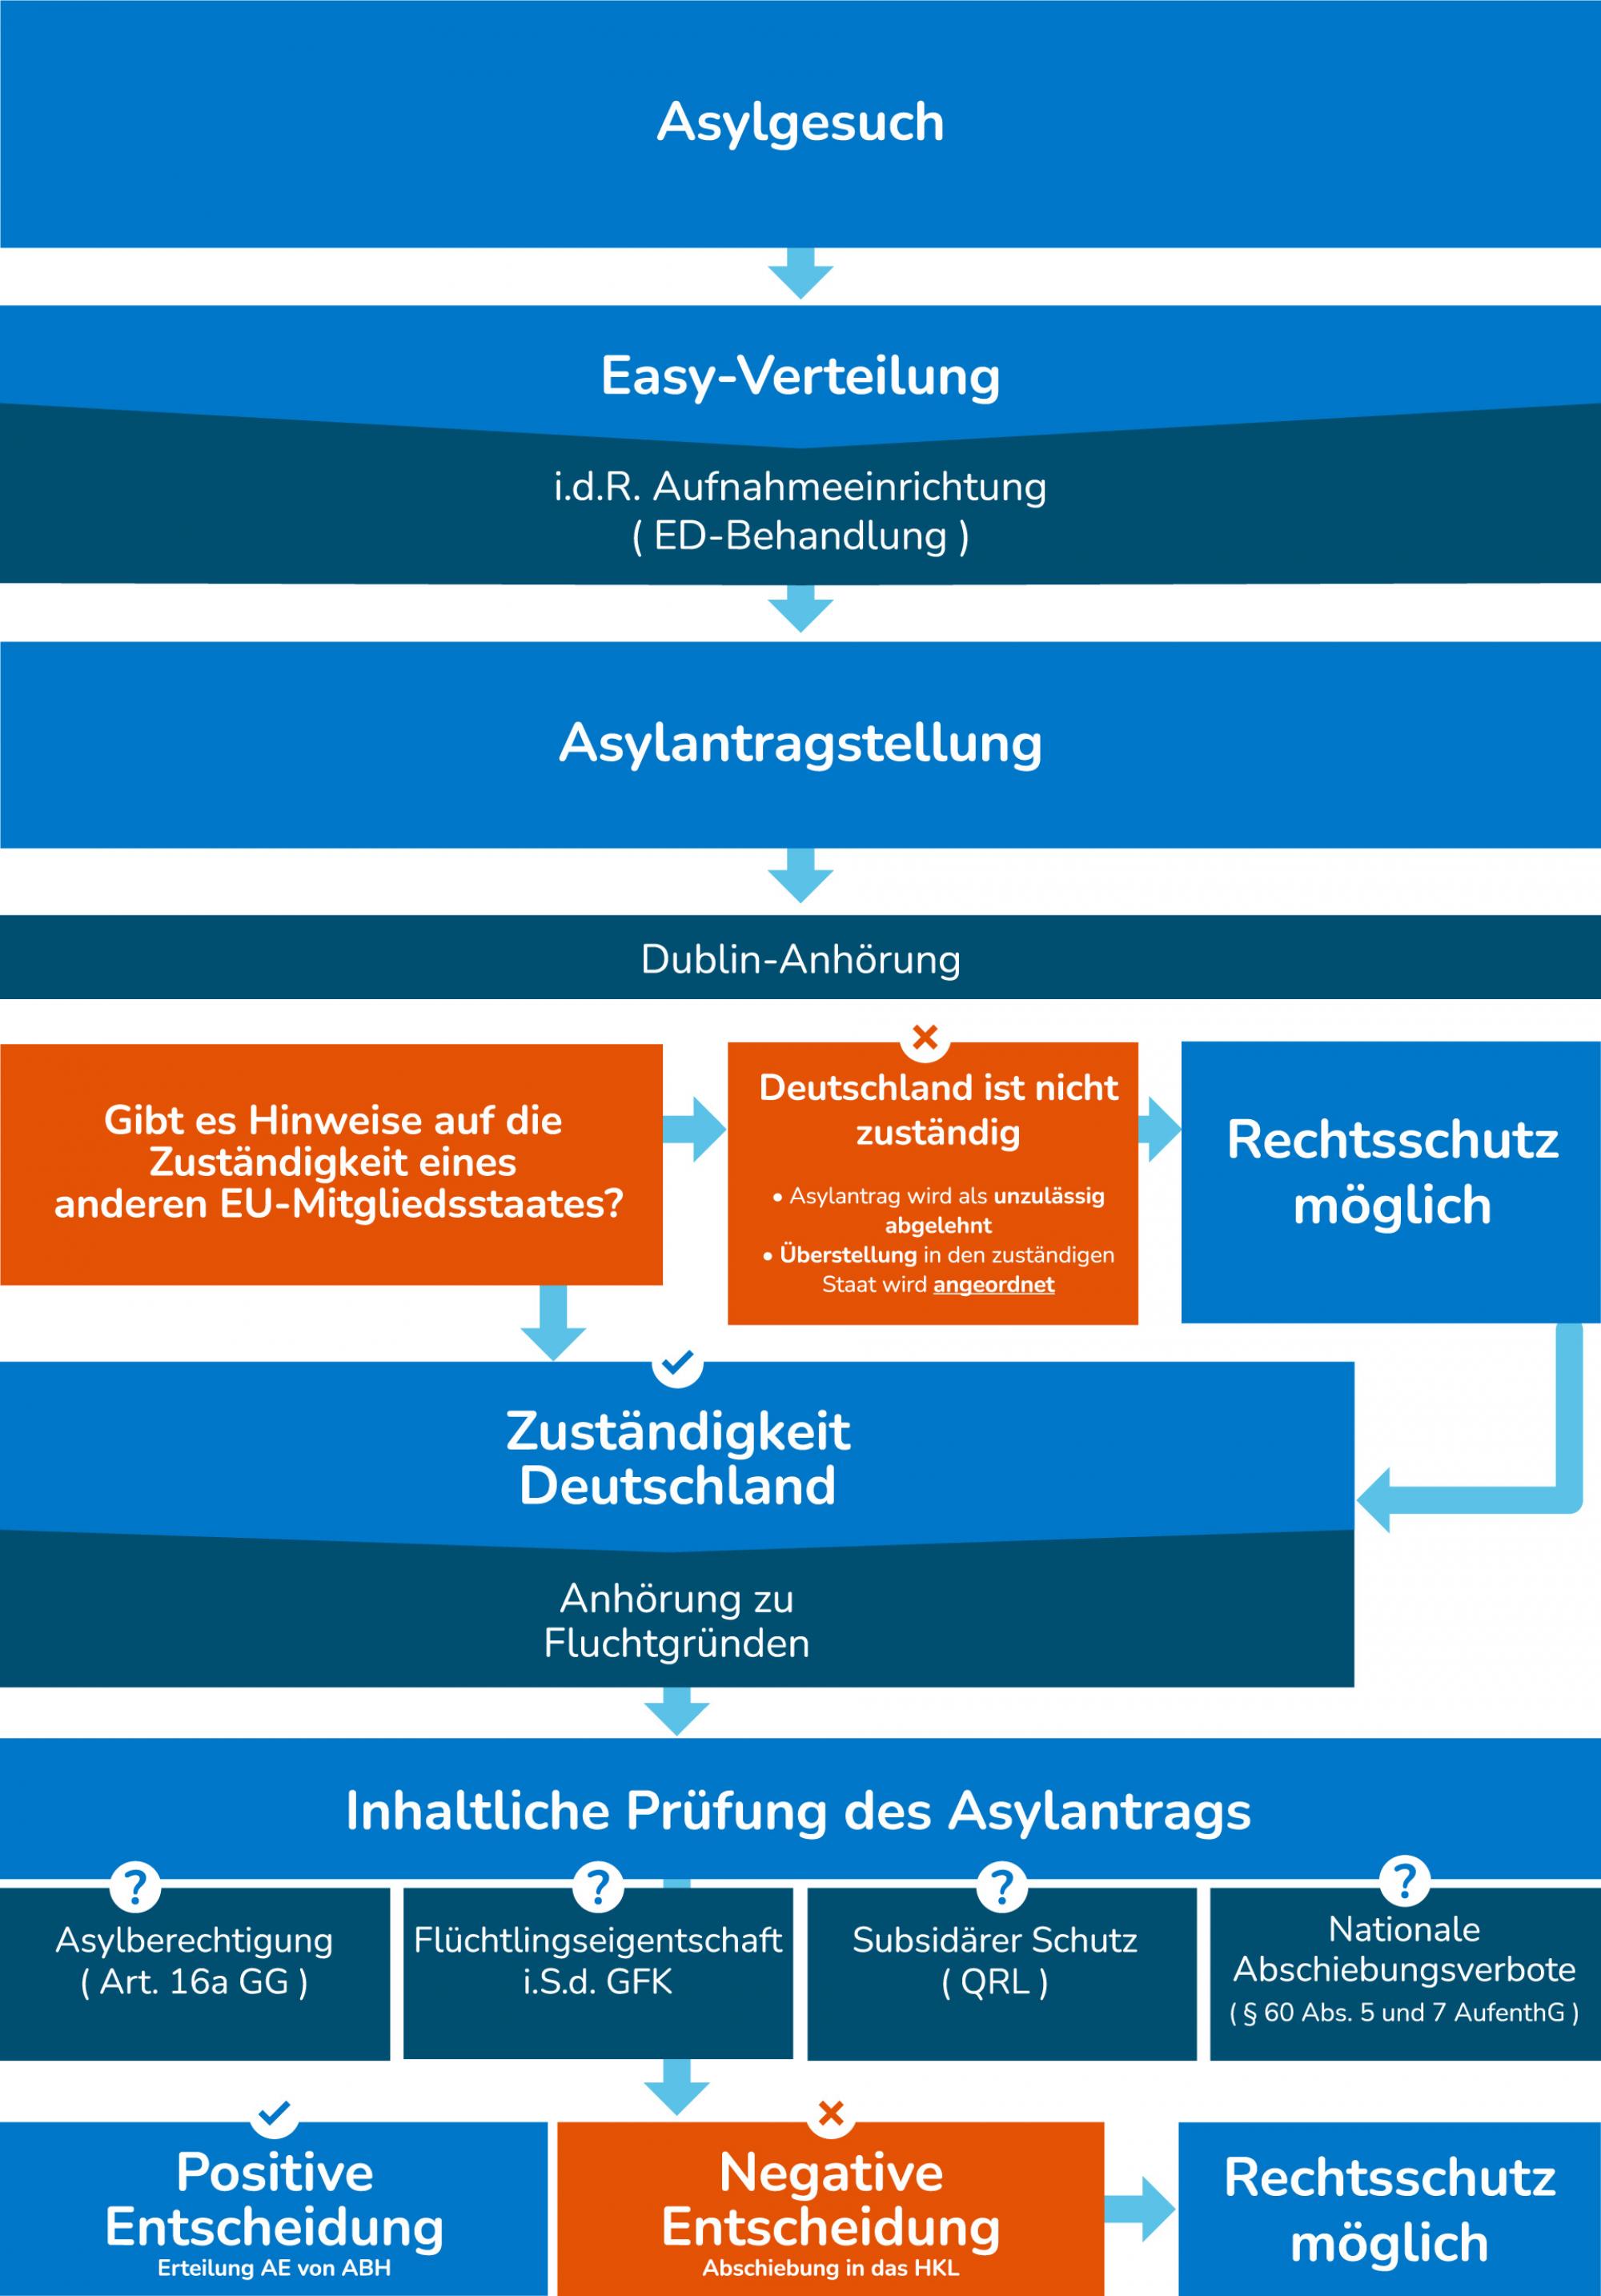 Die Grafik zeigt das Asylverfahren in Deutschland als mehrstufigen Prozess vom Asylgesuch bis zur Entscheidung des Bundesamts für Migration und Flüchtlinge.